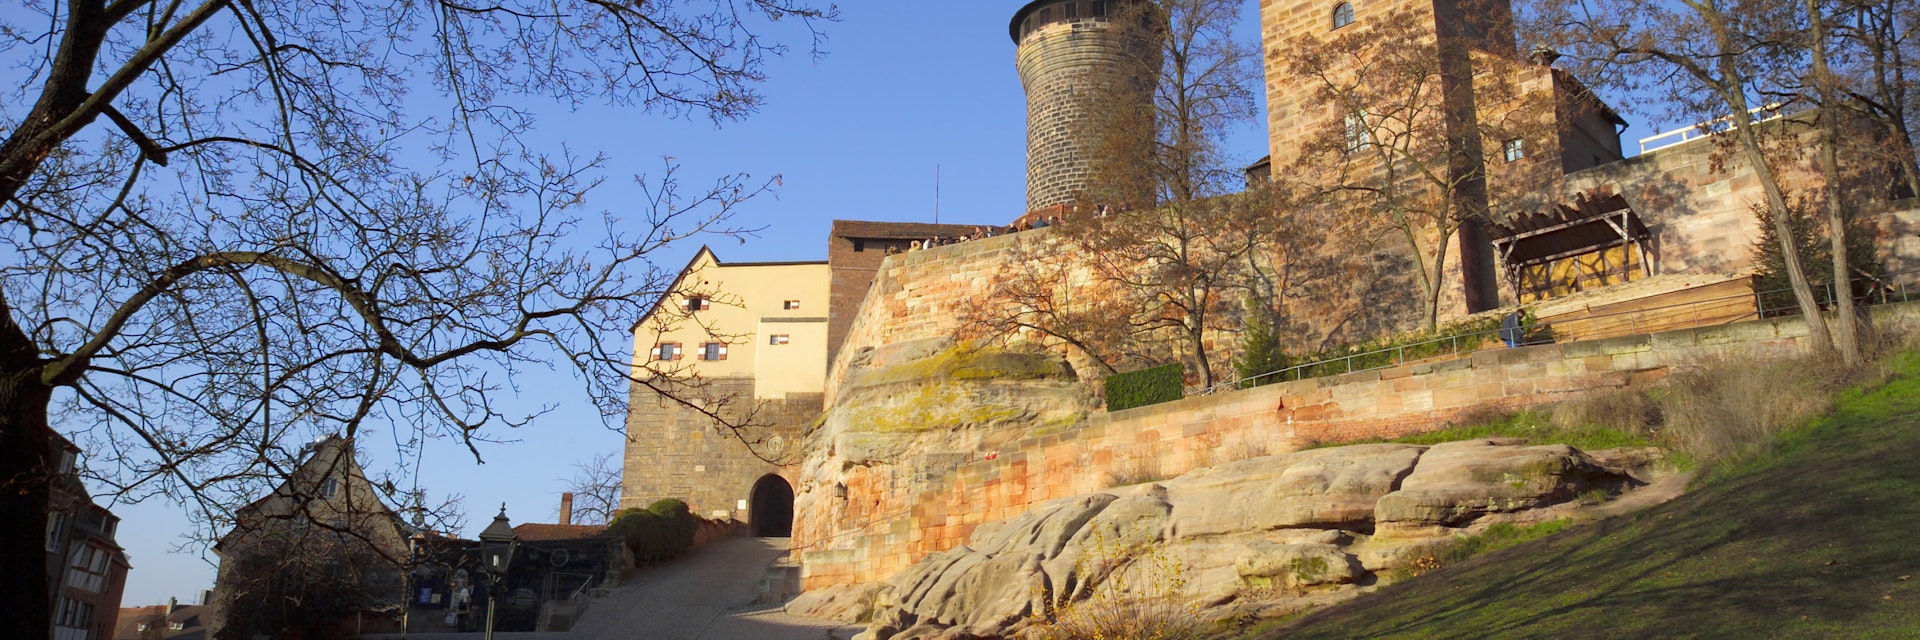 Kaiserburg (Imperial castle) & Sinwellturm (tower), N|rnberg (Nuremberg), Bavaria, Germany